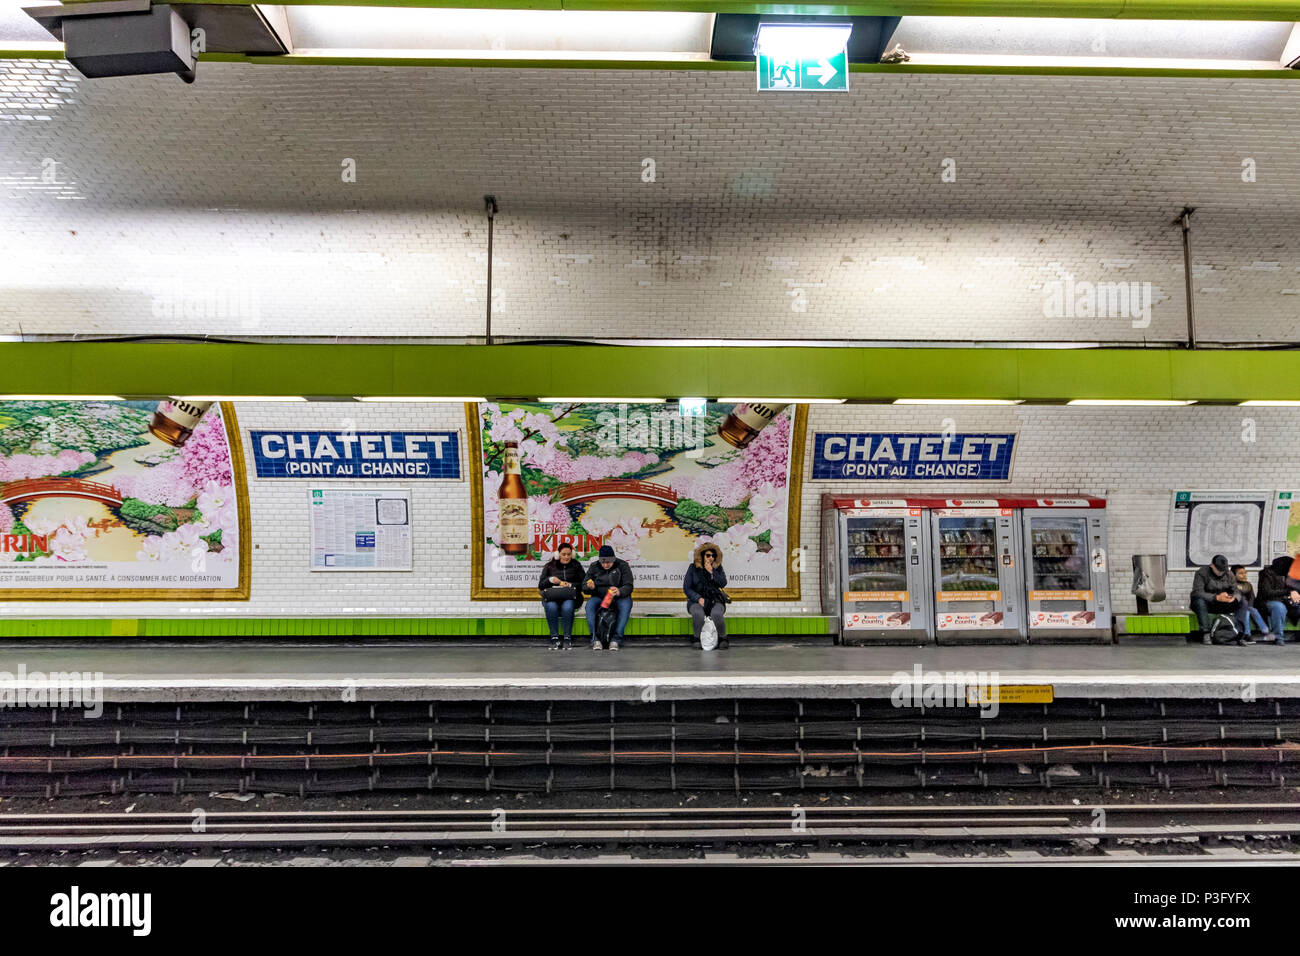 Des gens assis en attente d'un train sur la station Châtelet Pont au Change sur le métro de Paris, France Banque D'Images